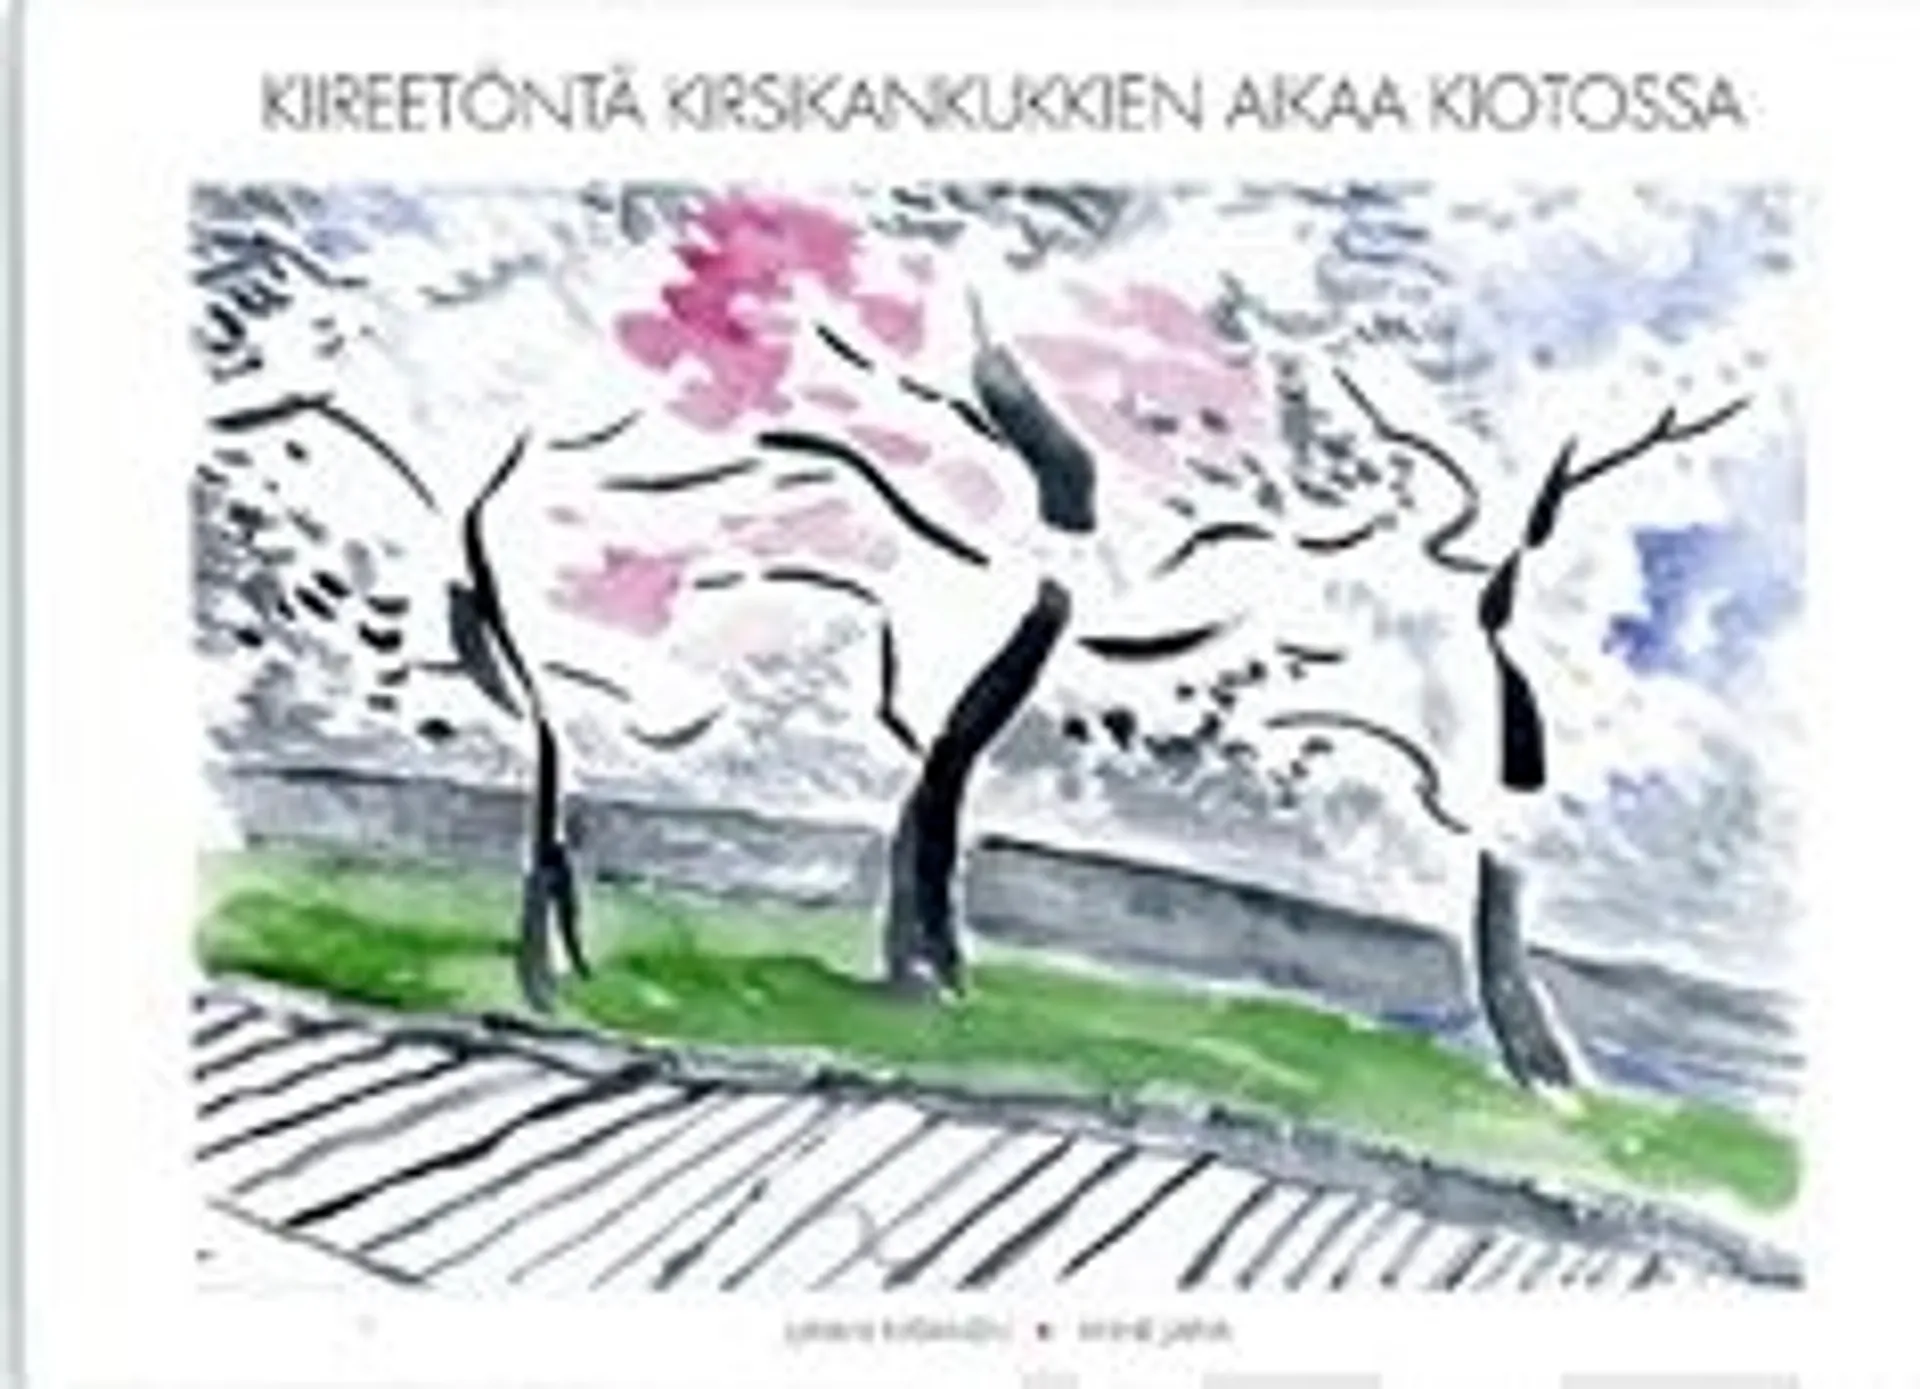 Katainen, Kiireetöntä kirsikankukkien aikaa Kiotossa